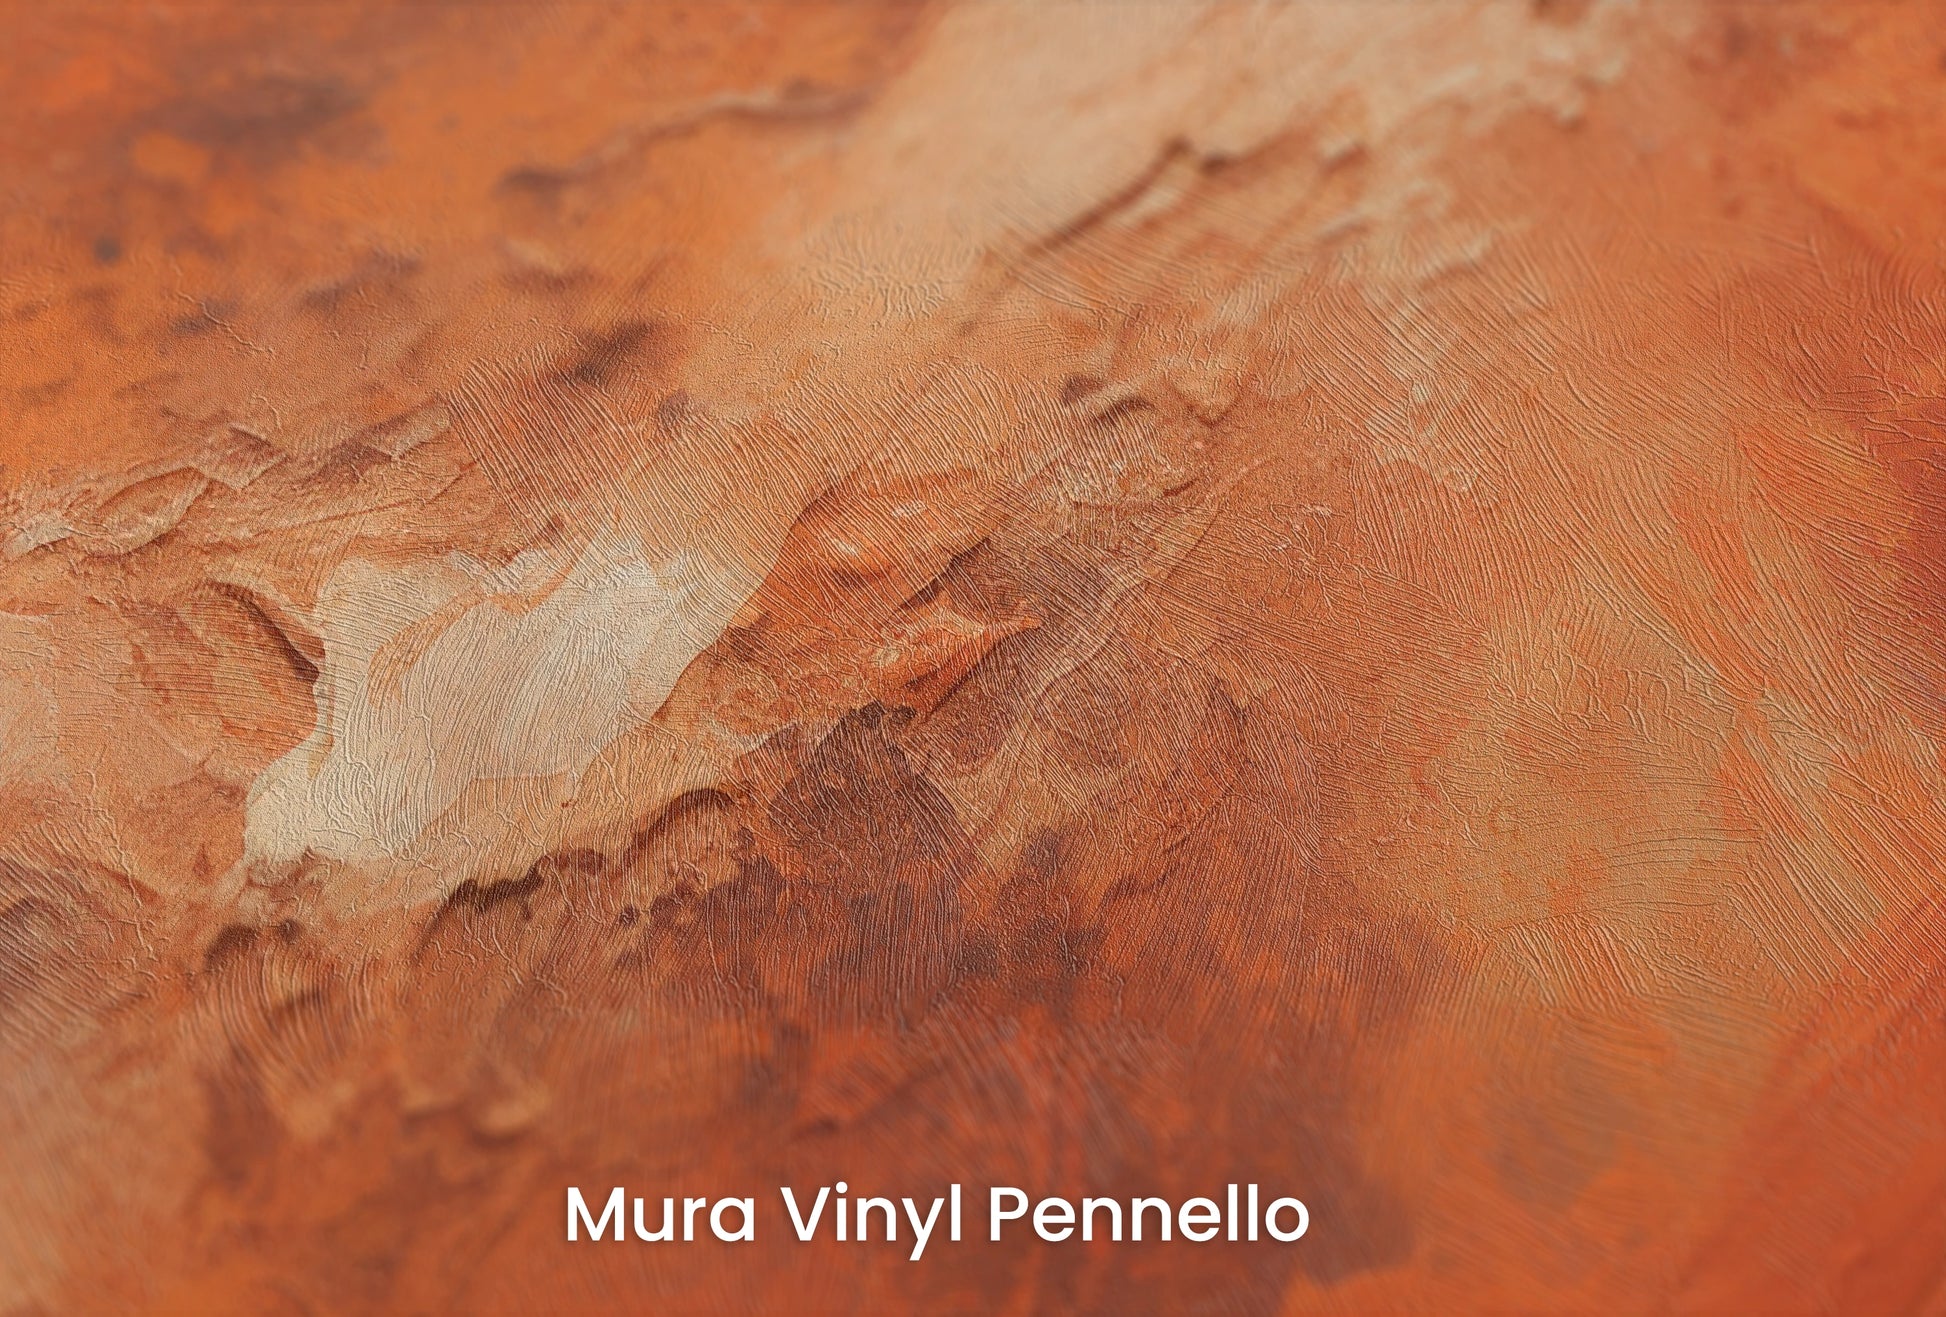 Zbliżenie na artystyczną fototapetę o nazwie Mars' Warmth na podłożu Mura Vinyl Pennello - faktura pociągnięć pędzla malarskiego.